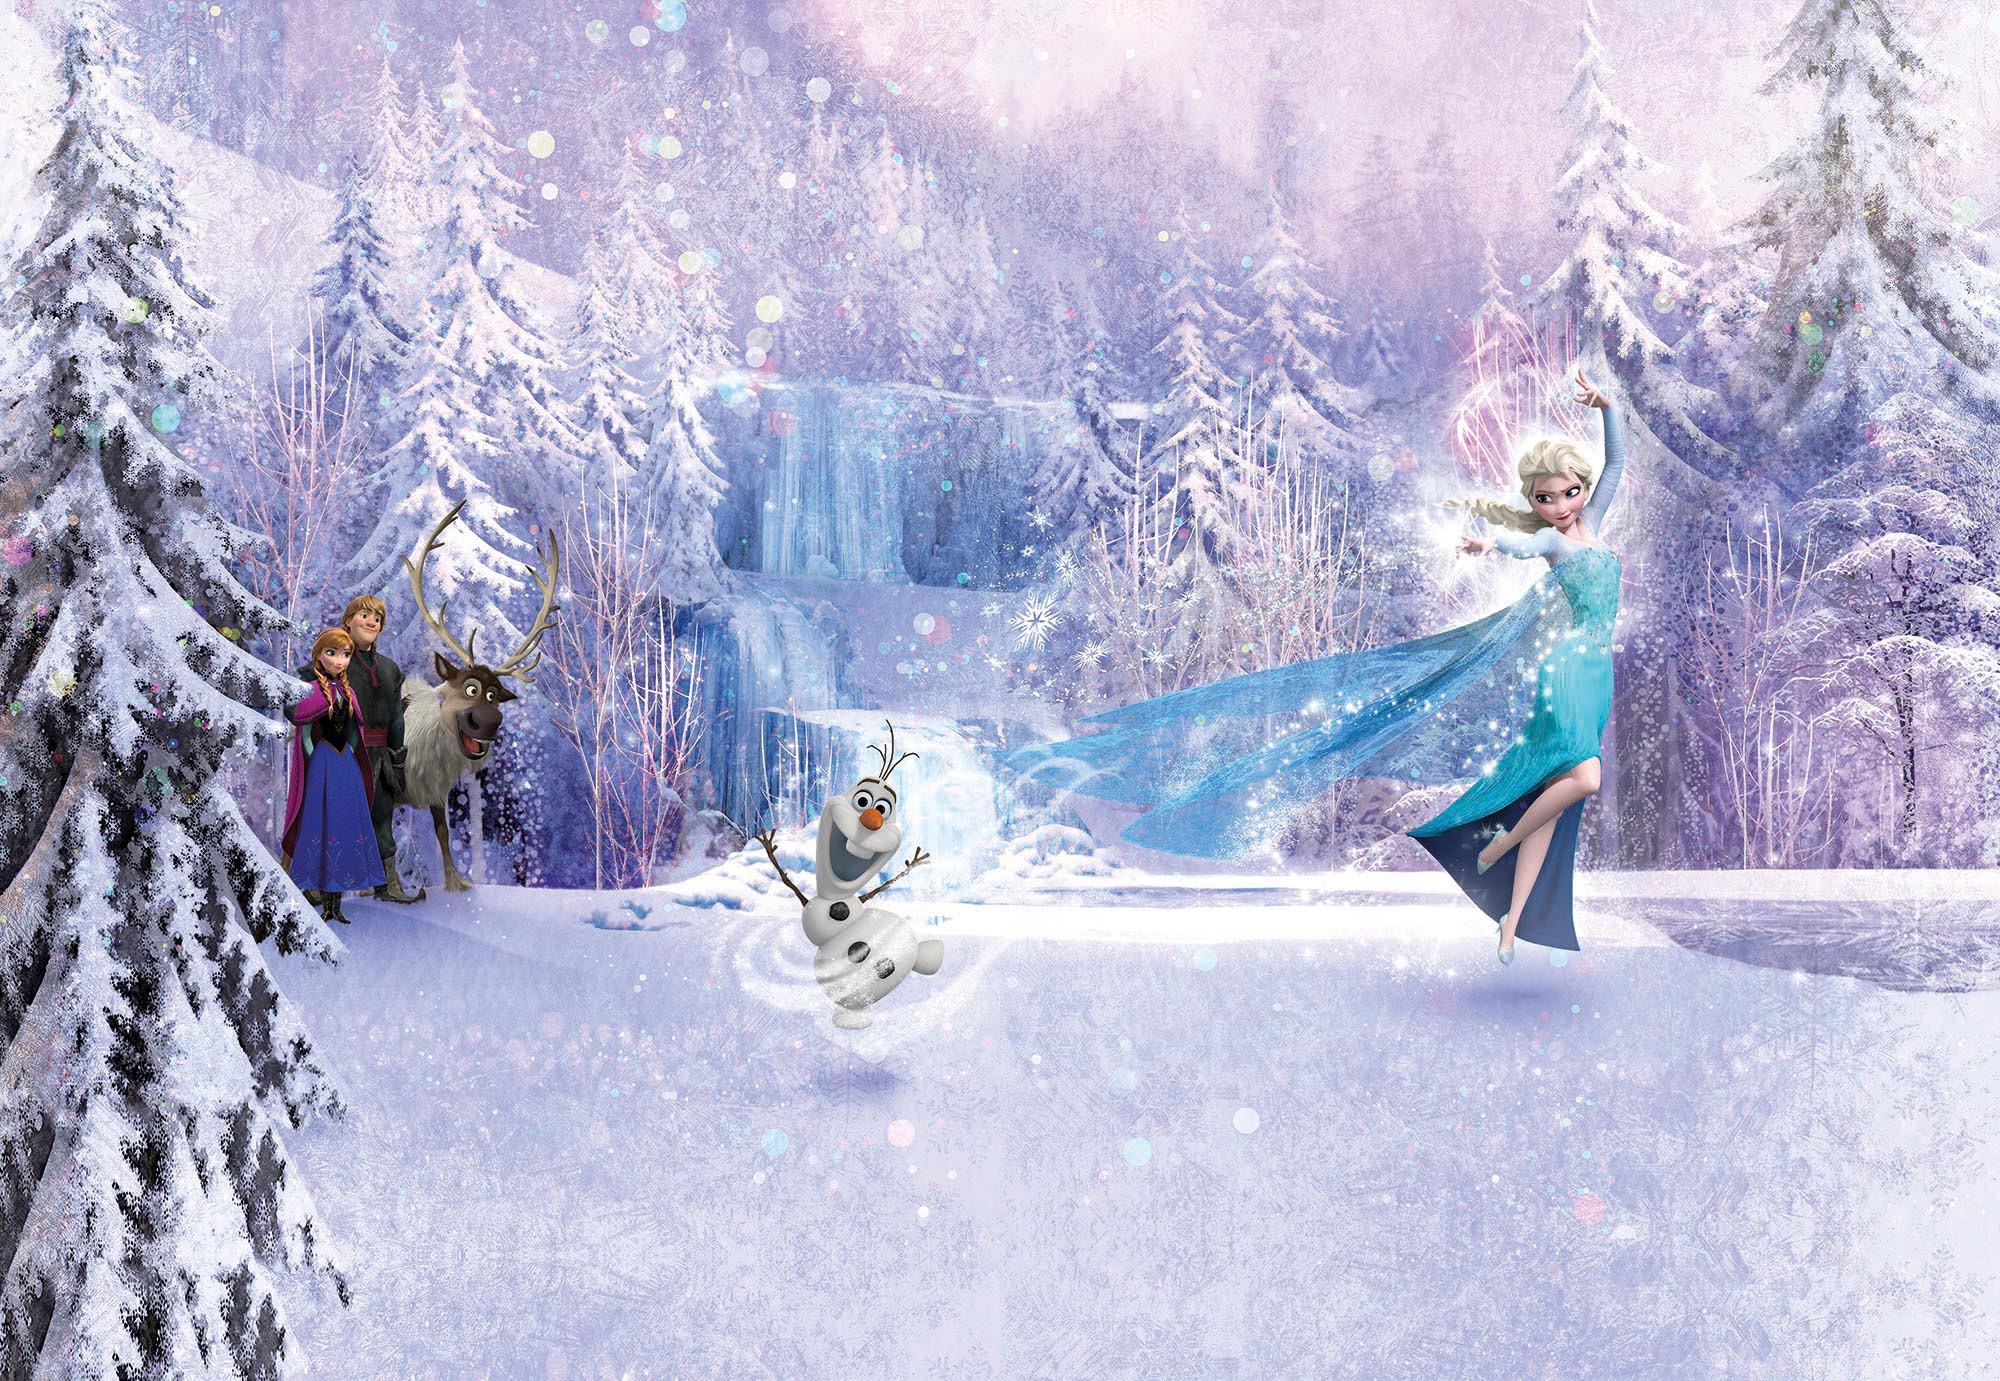 Photomural "Frozen Forest" from Komar  Disney